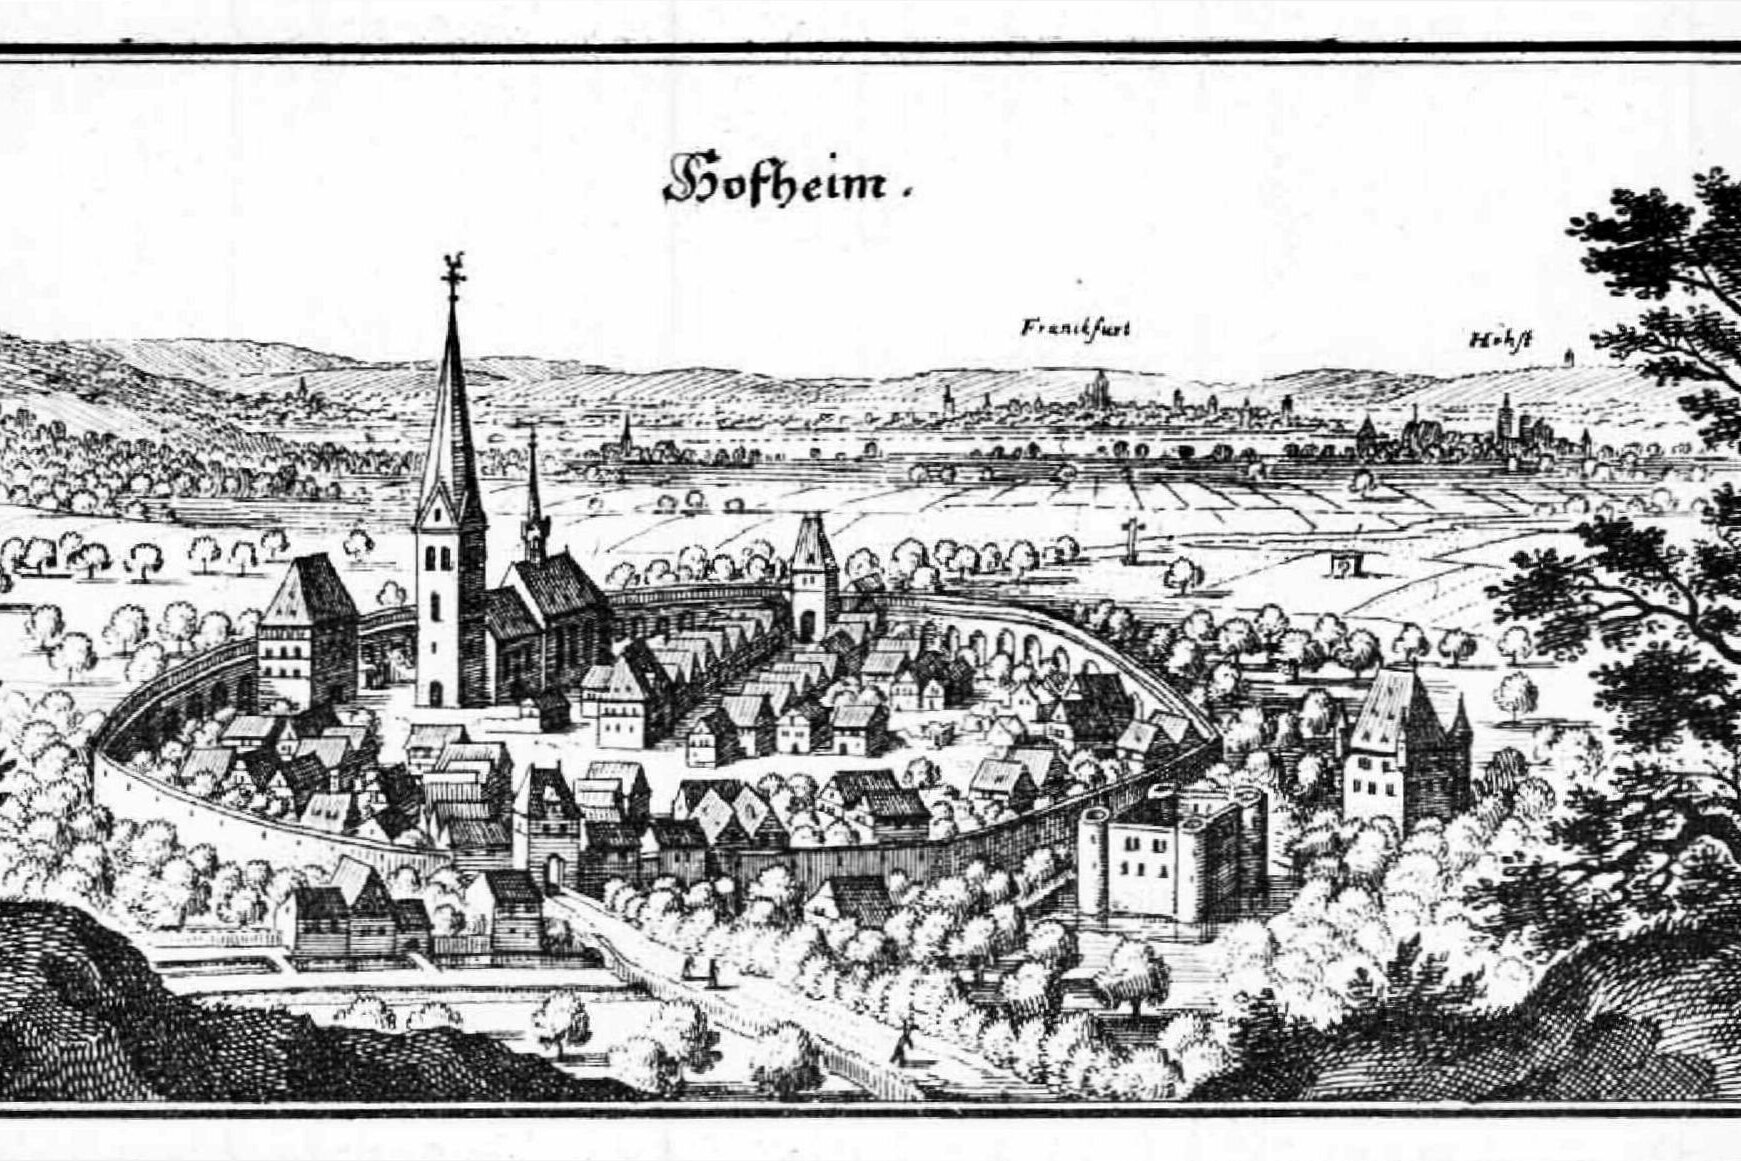 Historisches Bild zeigt Hofheim mit Stadtmauer und das Gebiet um Hofheim